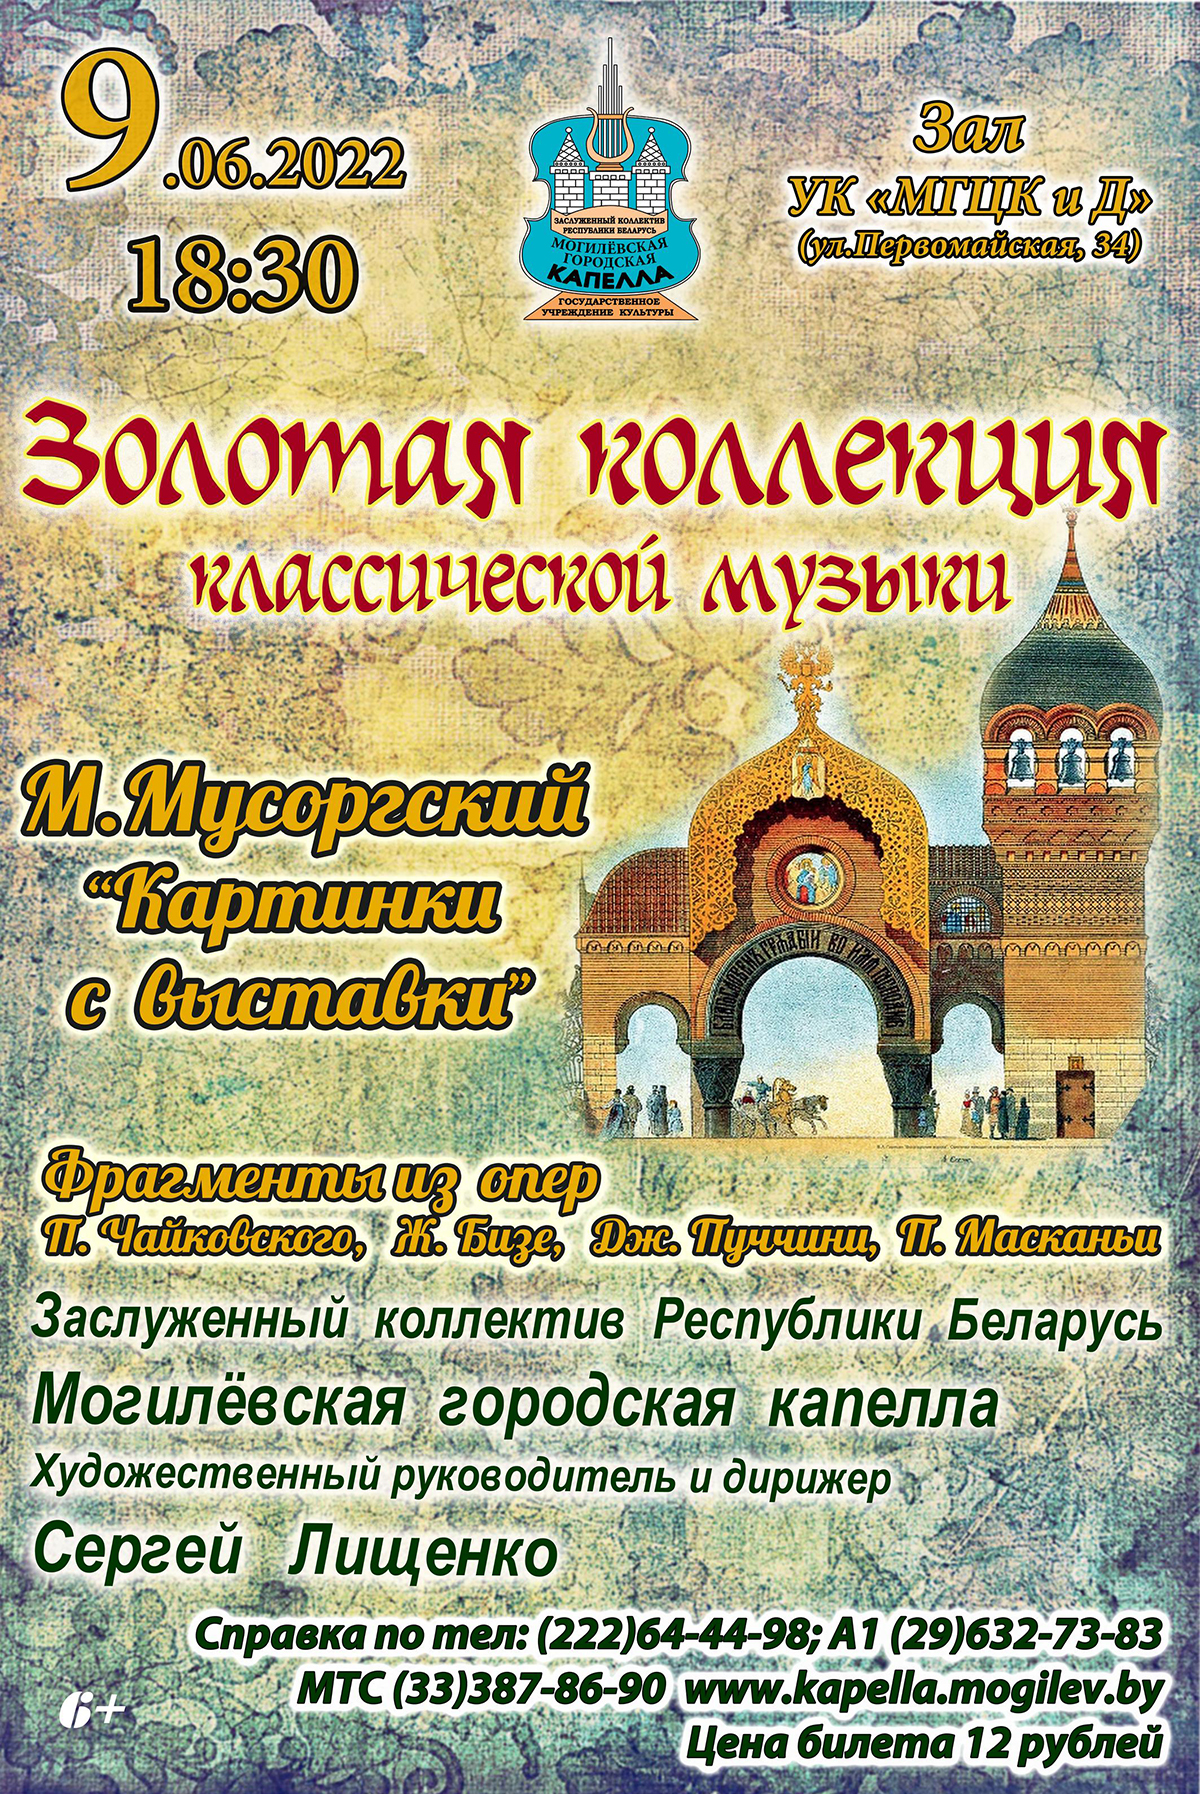 «Золотая коллекция классической музыки»: концерт городской капеллы пройдет в Могилеве 9 июня